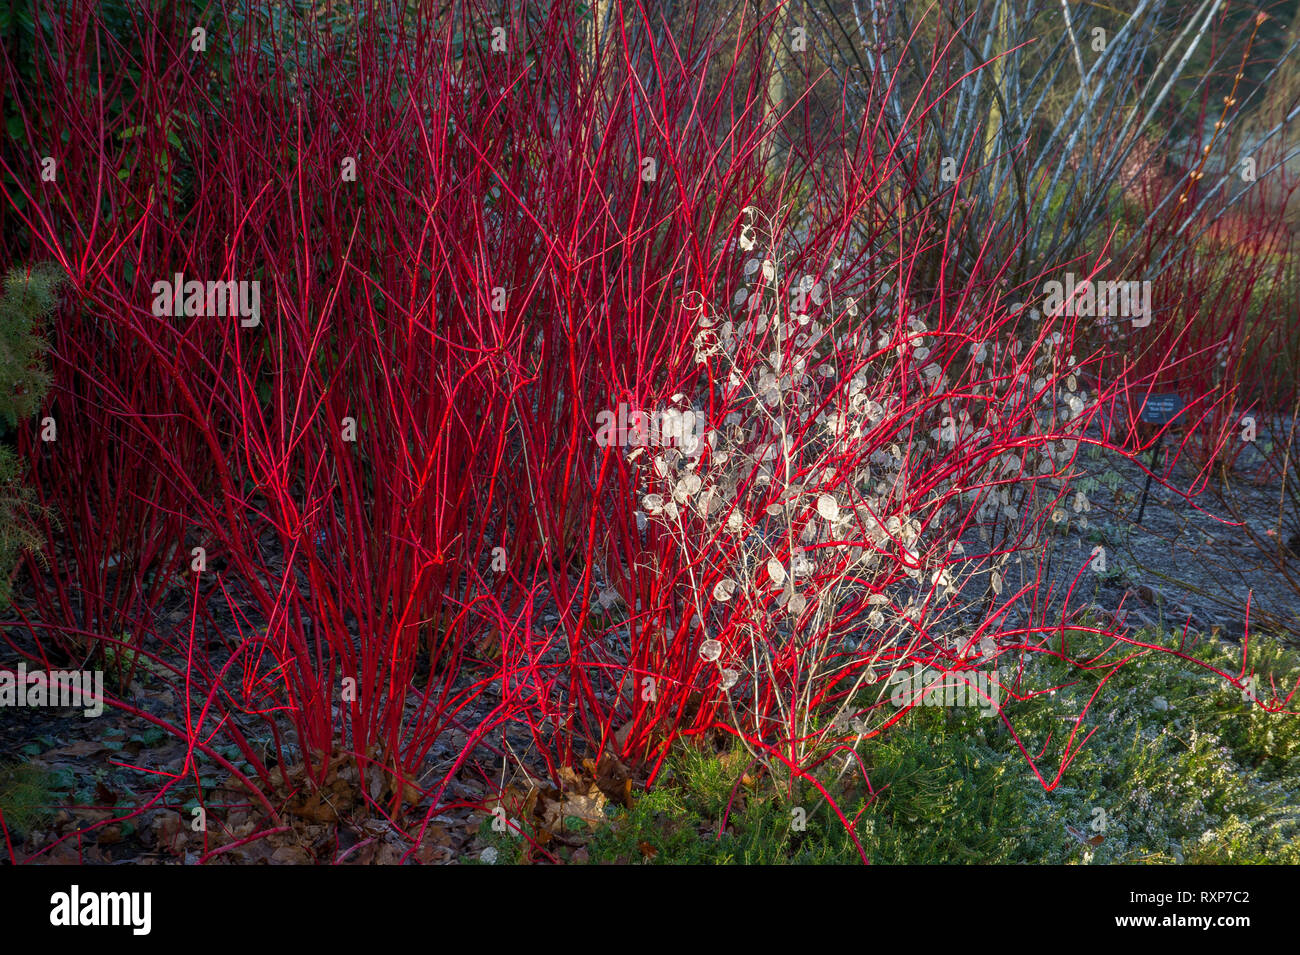 Cornus alba 'Sibirica' with Lunaria annua - Honesty in winter. Stock Photo